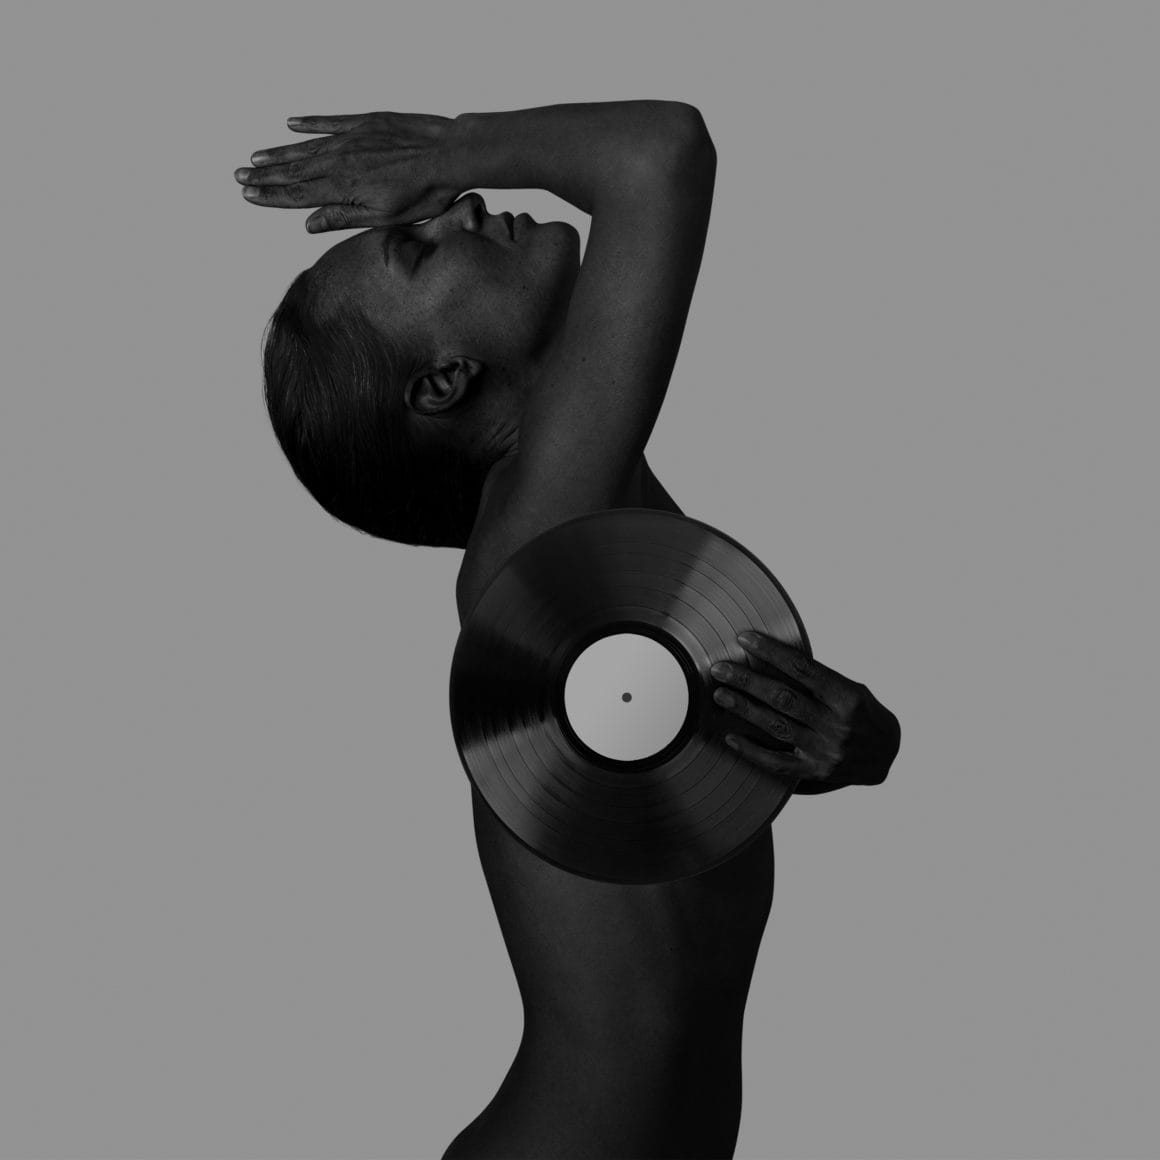 Portrait de LIA MOON, de profil et en noir et blanc. Elle tient un disque vinyl, qui lui permet de dissimuler sa poitrine.